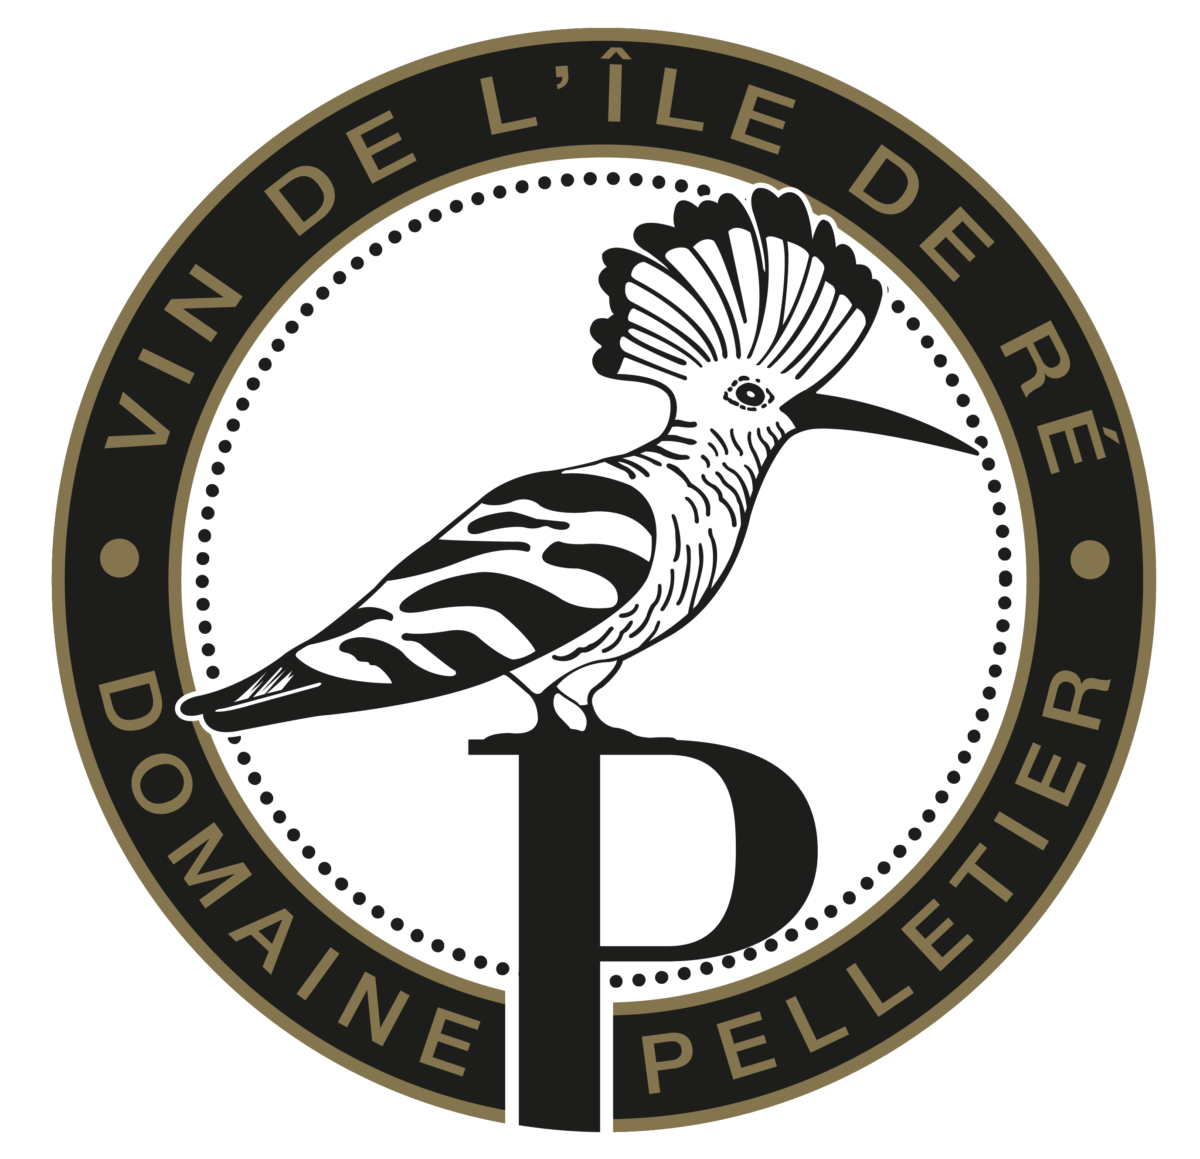 Domaine Pelletier, Vins de l'ile de Ré